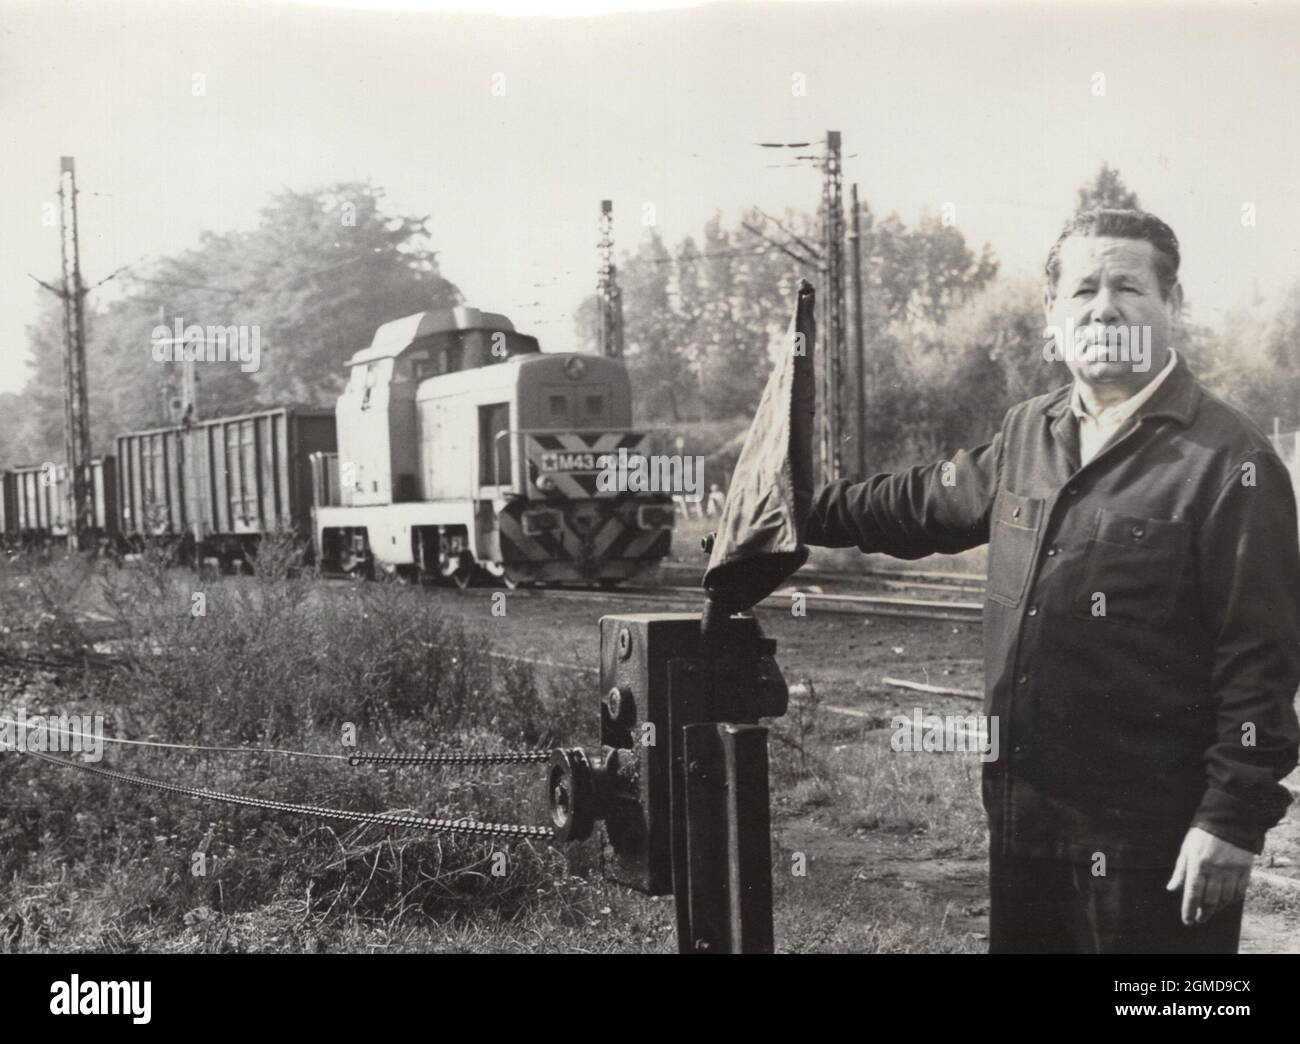 Original Retro-Foto aus den 1970er Jahren. Eine M43 Lokomotive ( Spitzname M43 Little Dacia) schoss. Dieser Zug war sehr kraftvoll, weit verbreitet in Osteuropa. Hergestellt in Rumänien. Foto wurde in Ungarn gedreht. Stockfoto